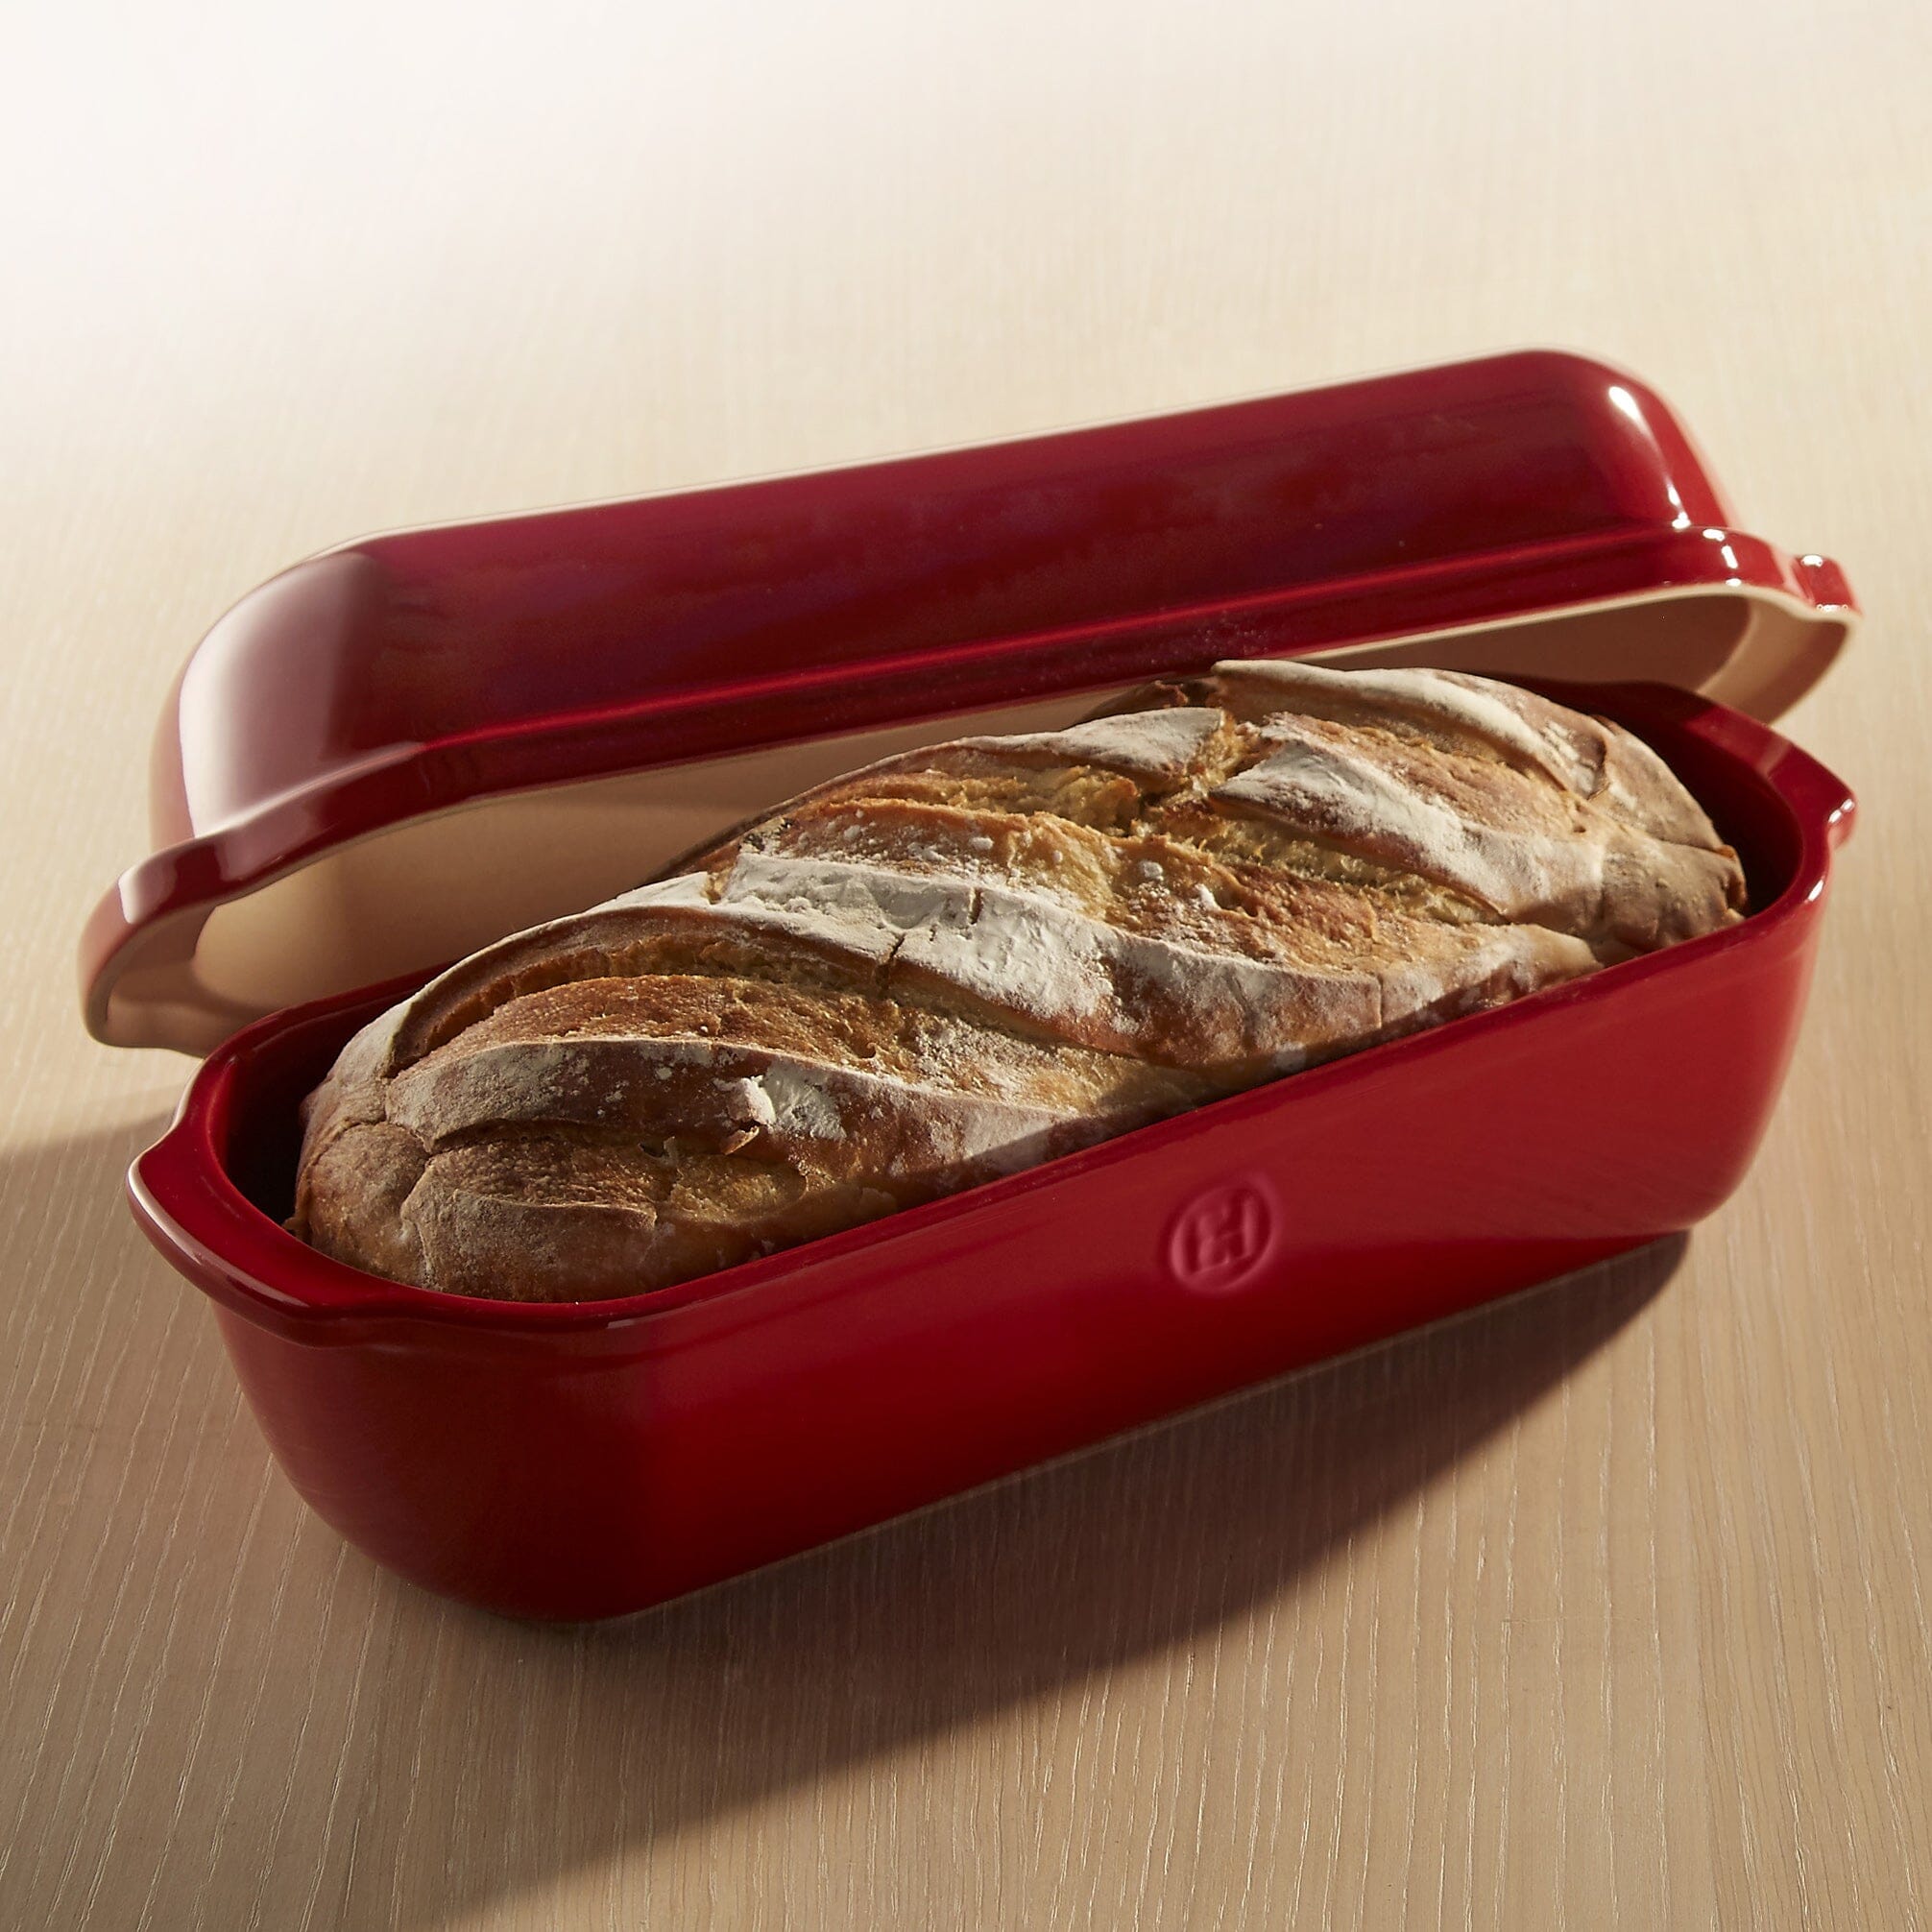 Artisan Bread Loaf Baker, Emile Henry USA